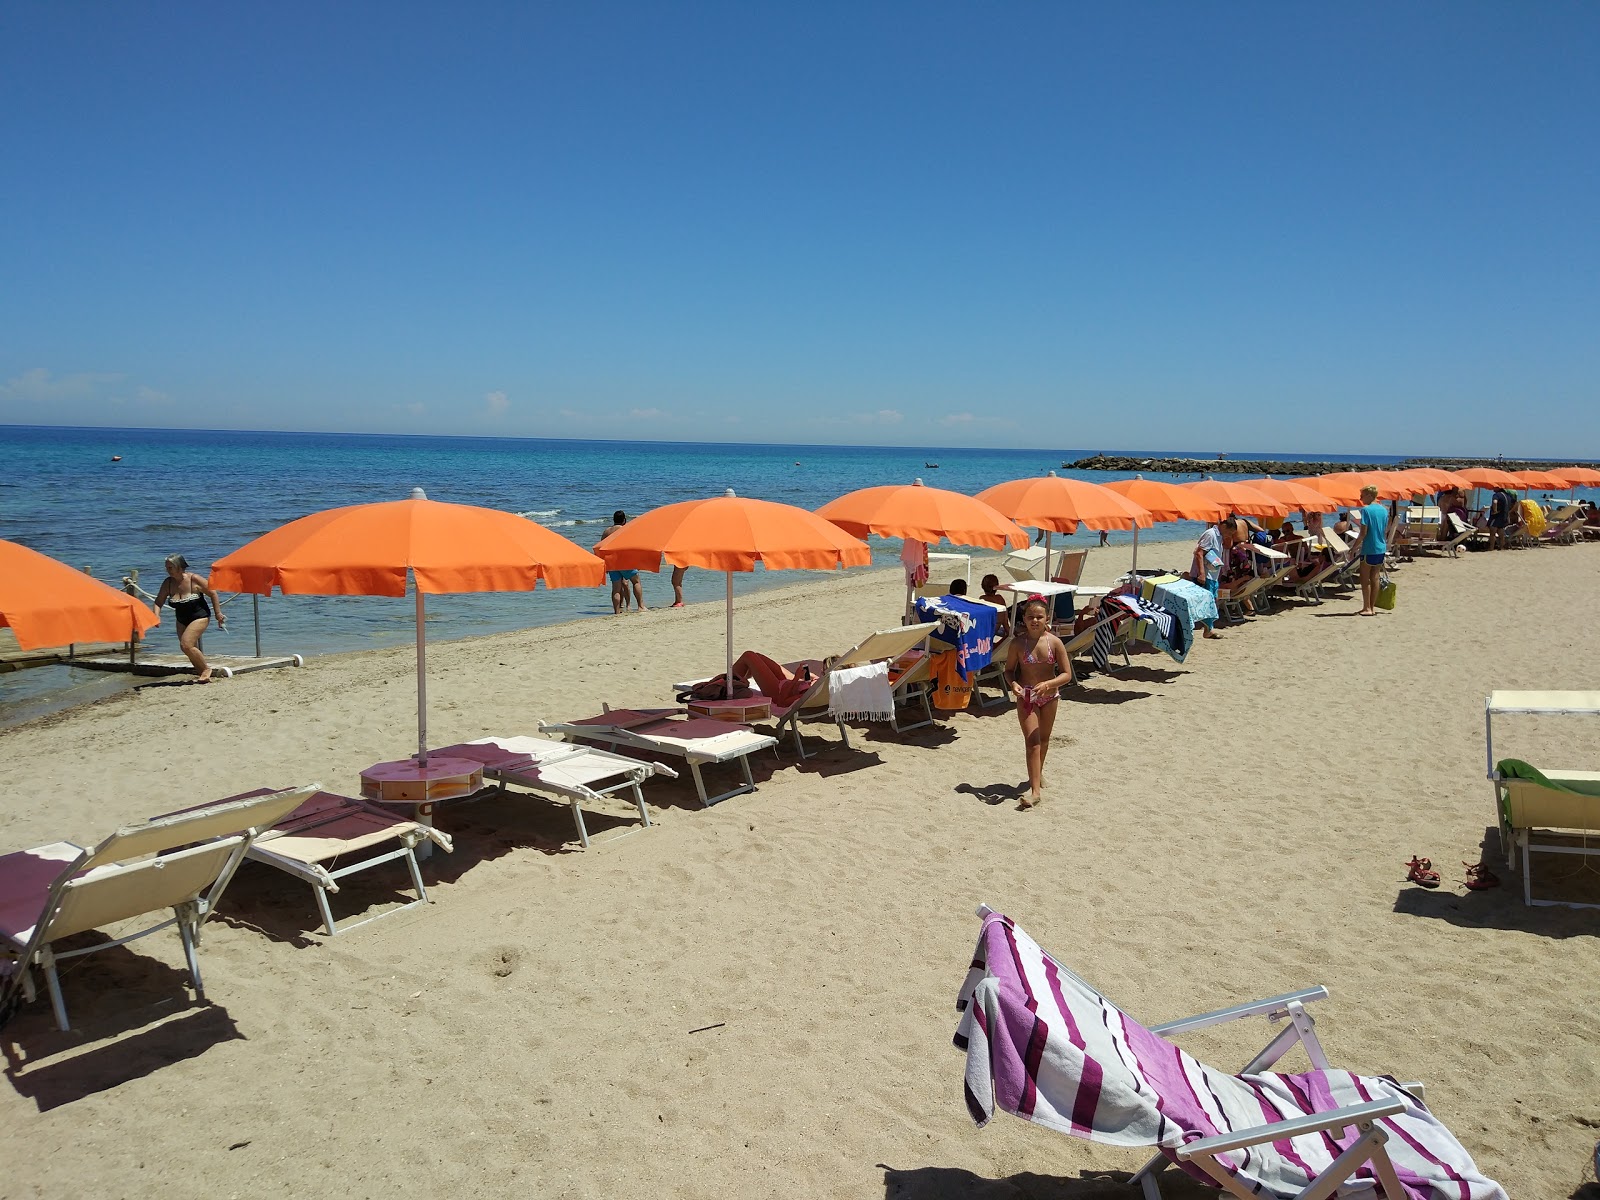 Spiaggia San Cataldo'in fotoğrafı doğal alan içinde bulunmaktadır